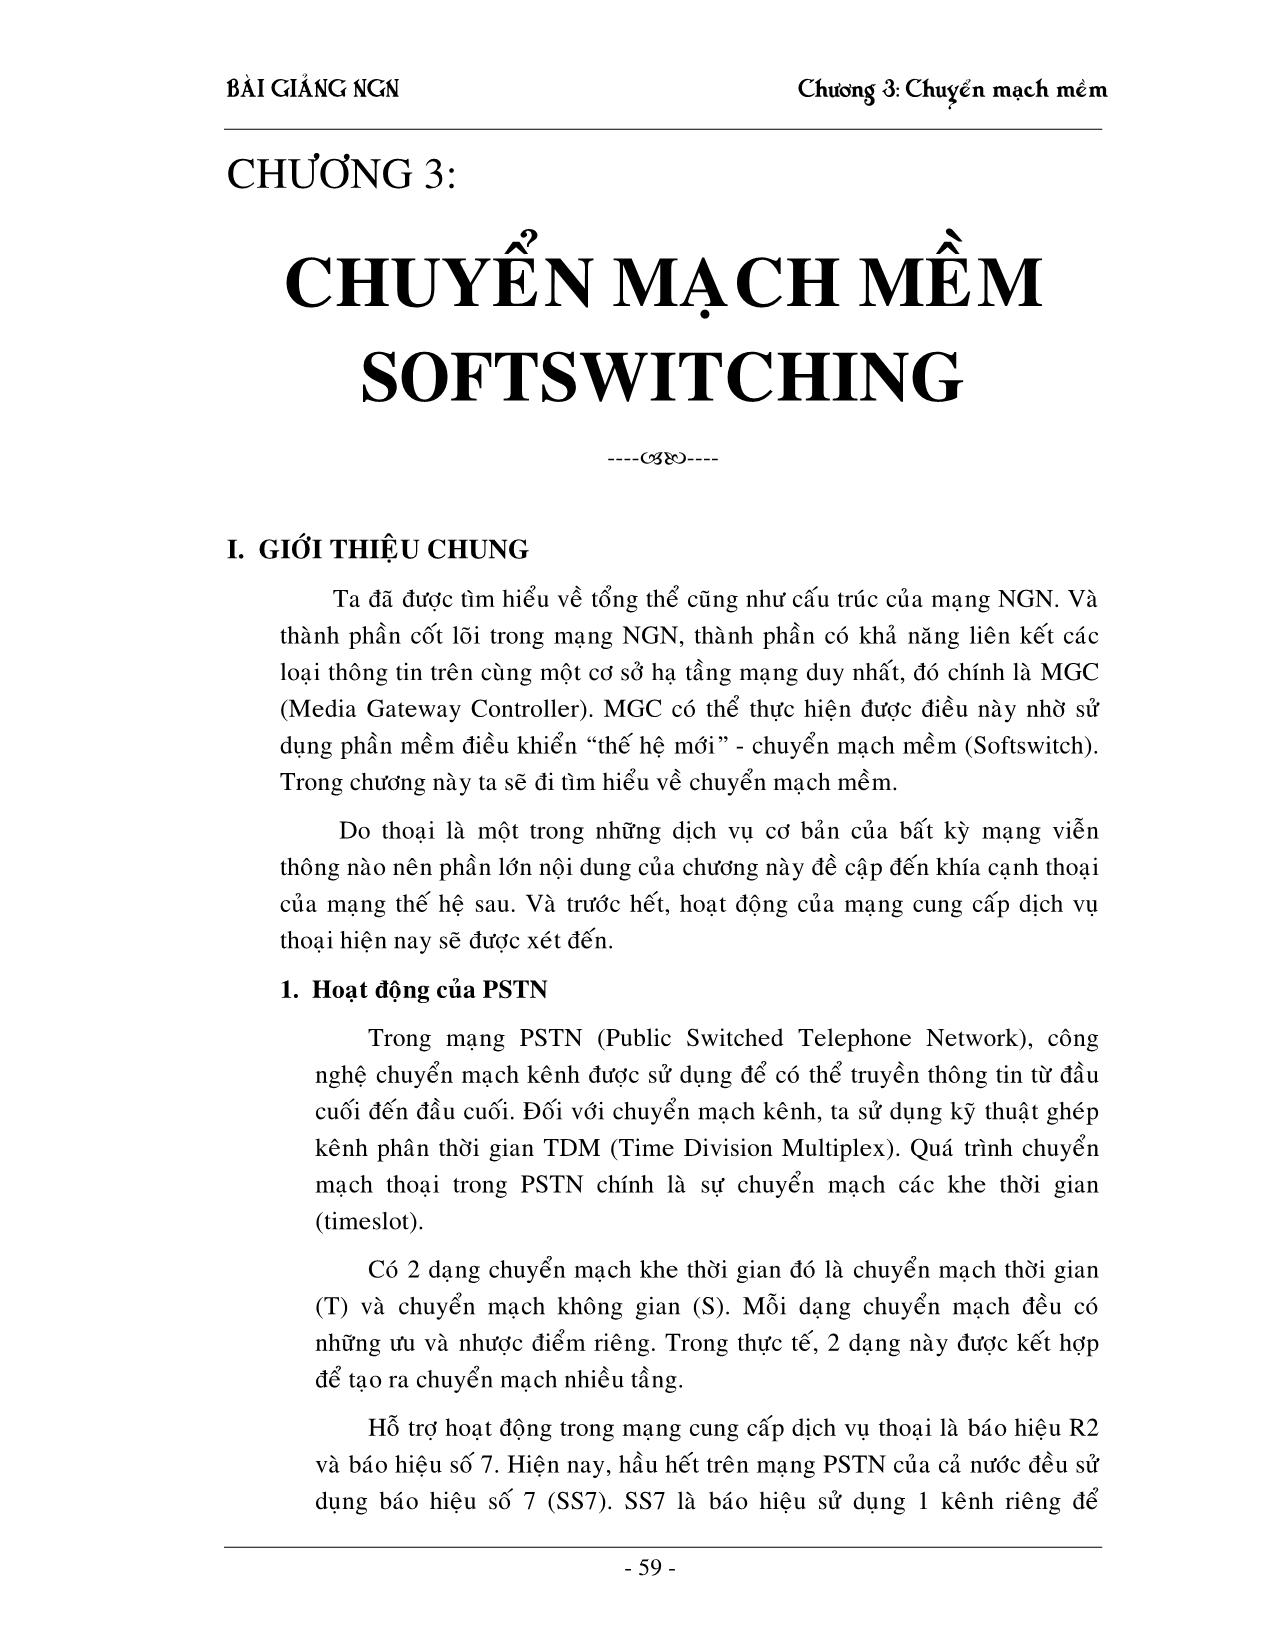 Giáo trình NGN - Chương 3: Chuyển mạch mềm Softswitching trang 1